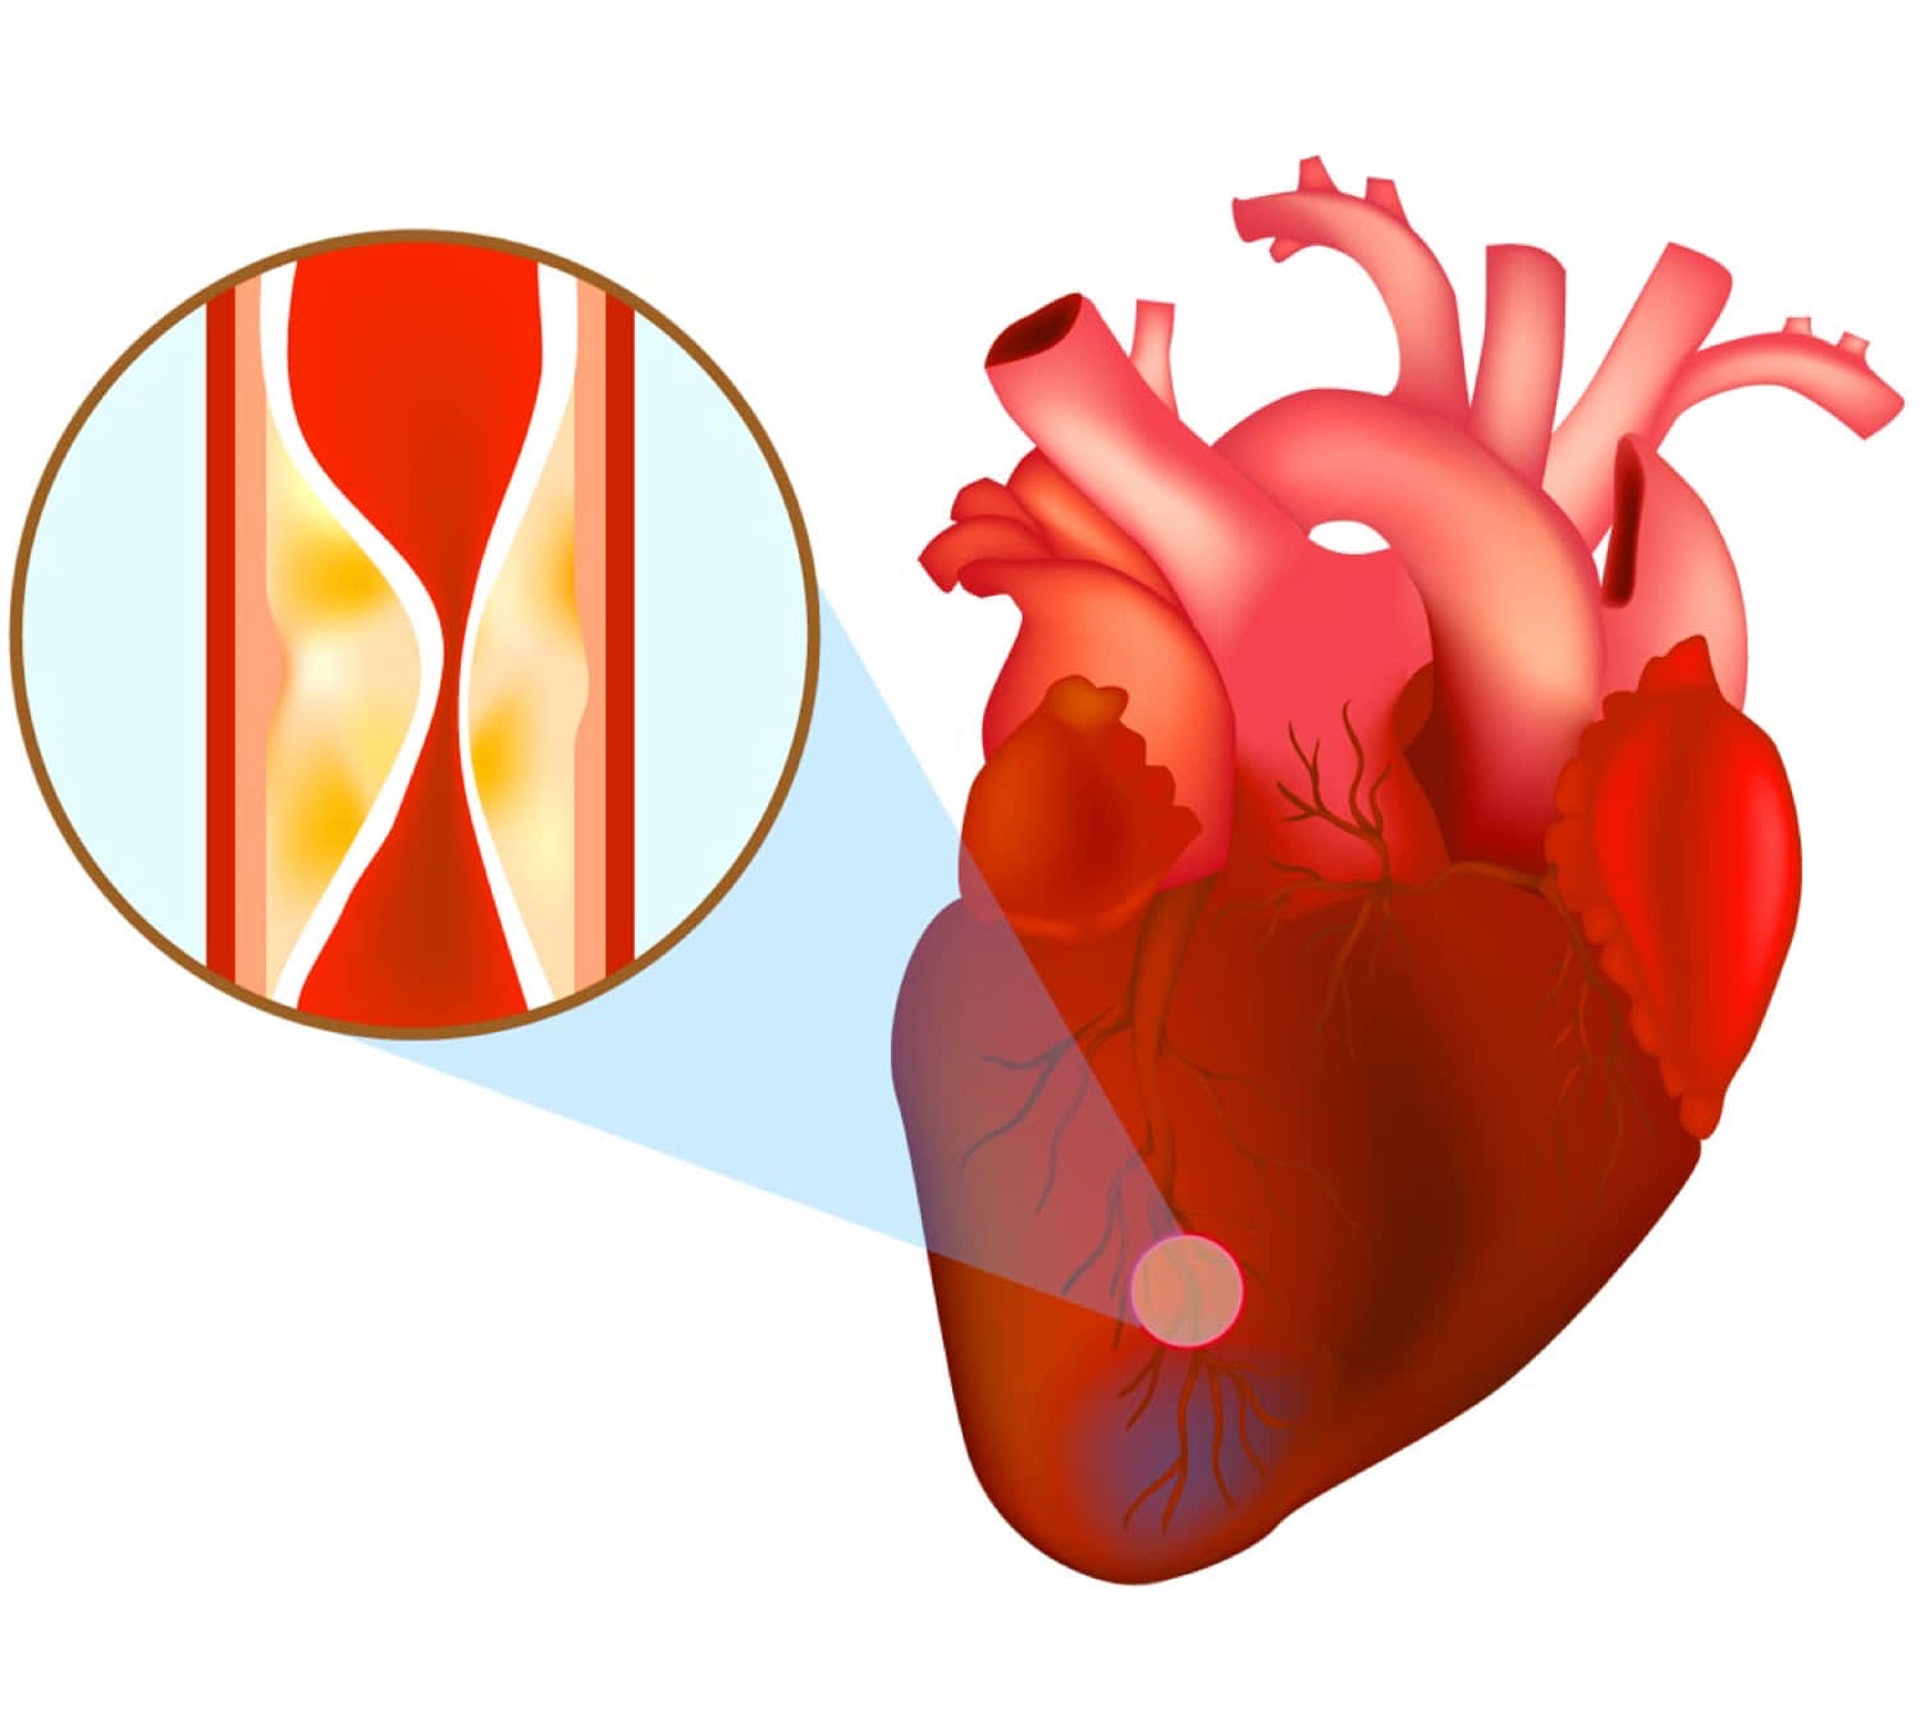 冠心病的成因是由於向心臟供應血流的冠狀動脈被阻塞，血流無法通過，令心肌缺氧繼而壞死，有機會導致患者猝死。（圖片：23mofang）